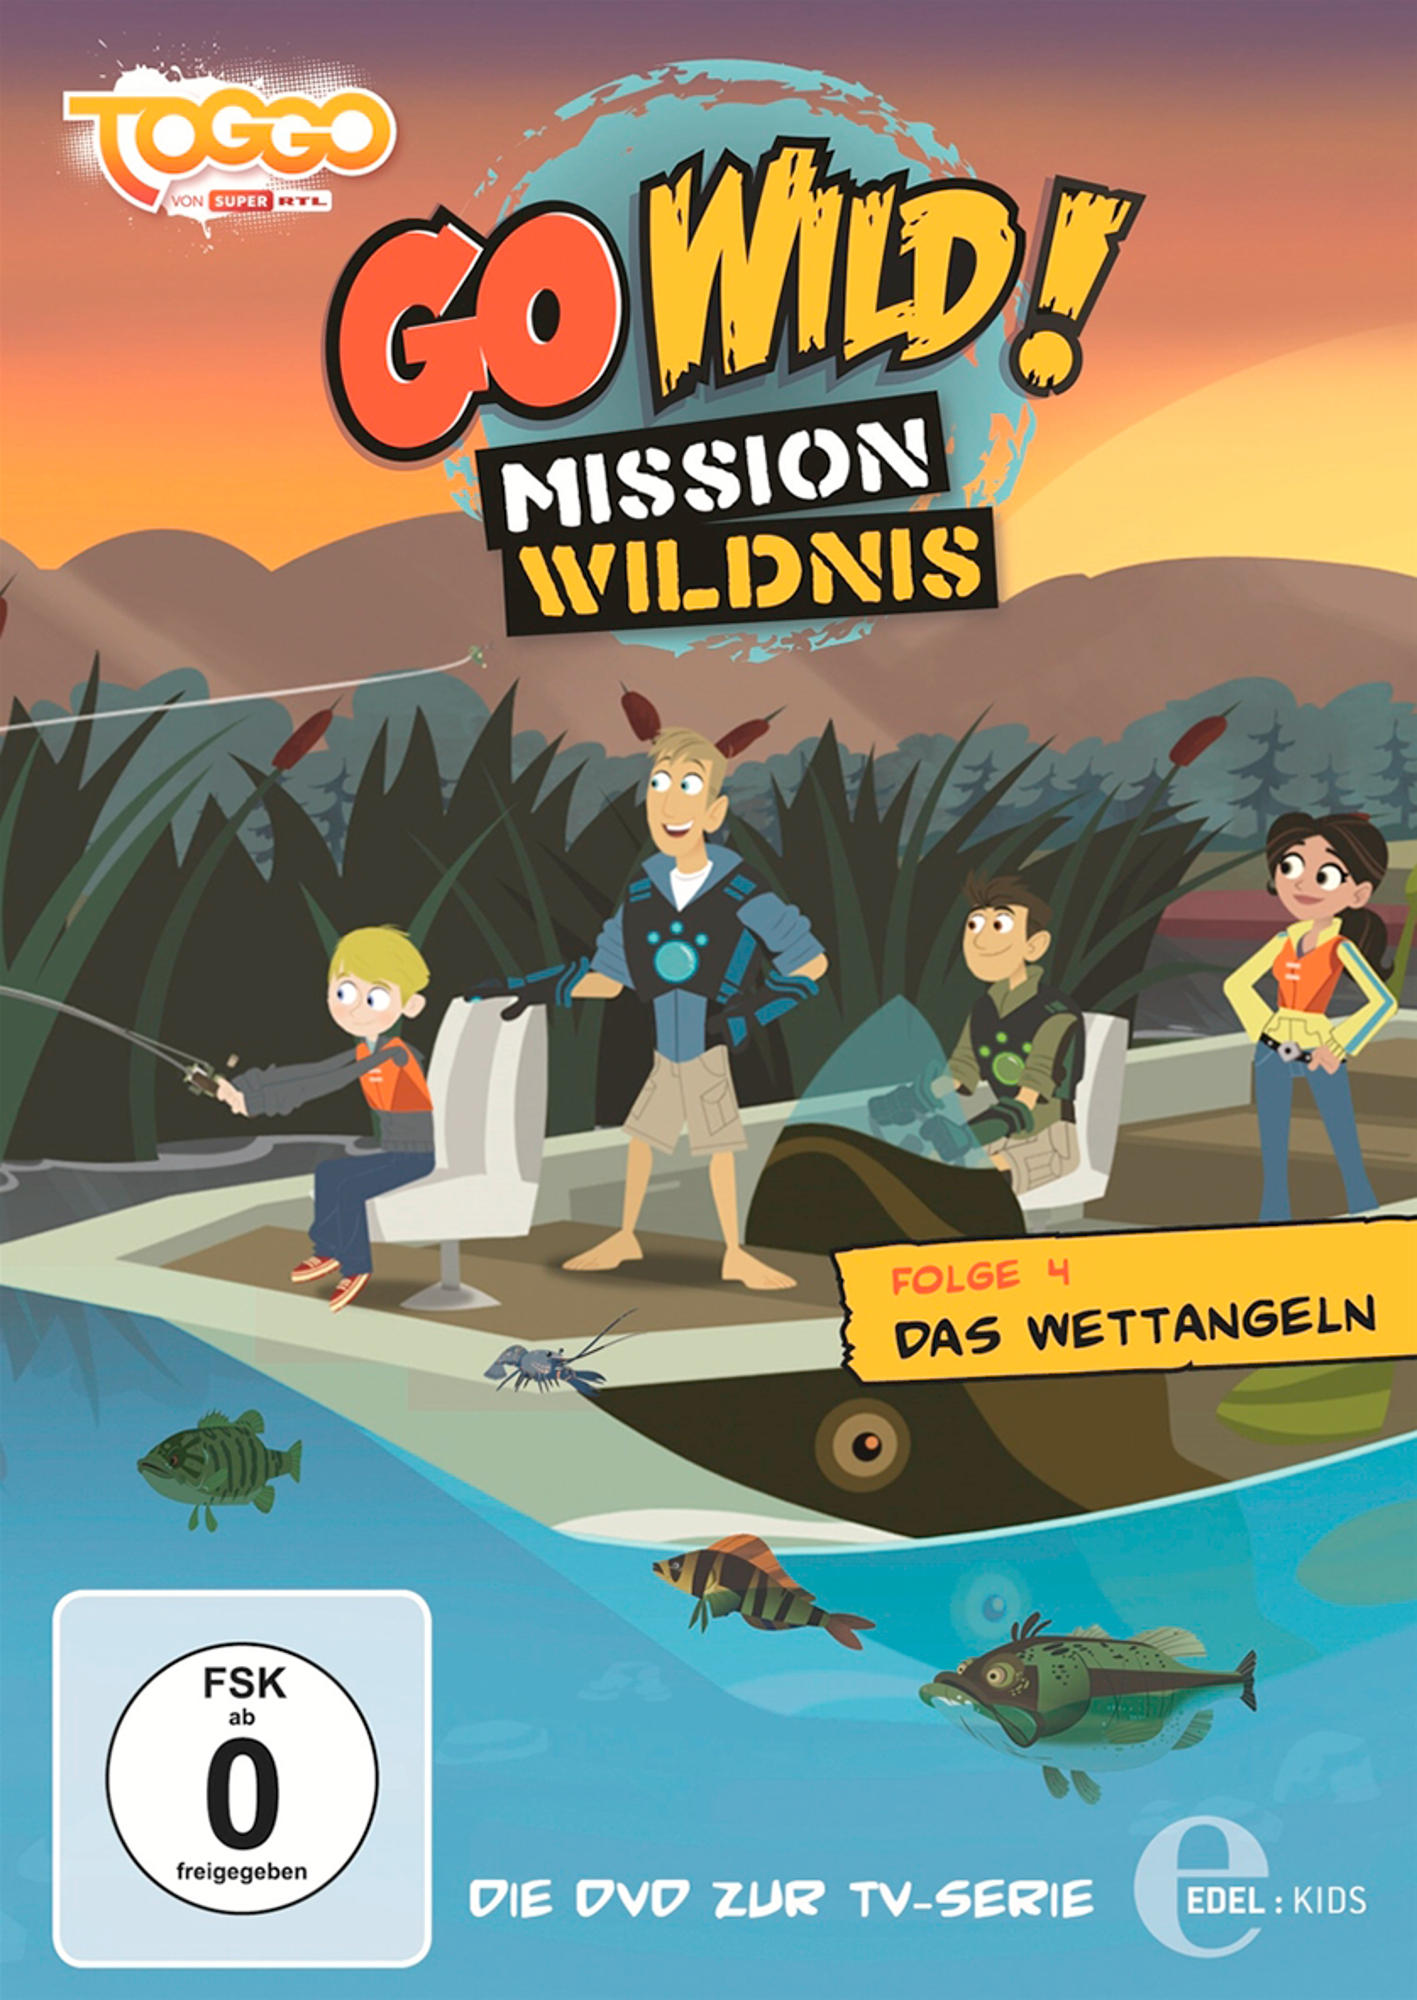 Wildnis - 004 Das - Wild! Mission Go DVD Wettangeln